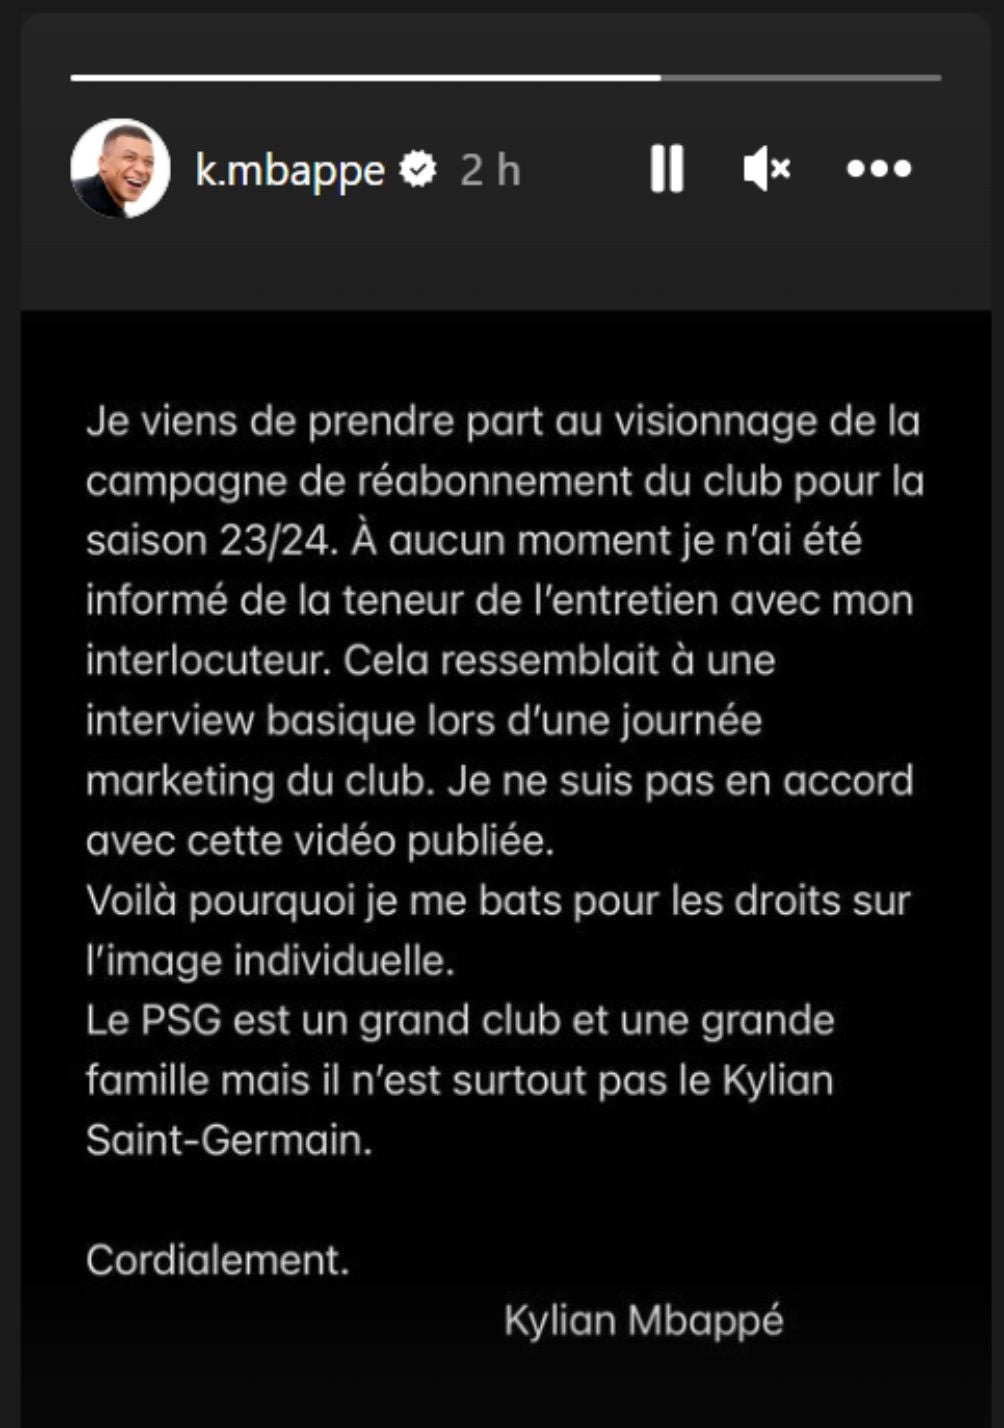 Mbappé envió un comunicado en sus stories de Instagram